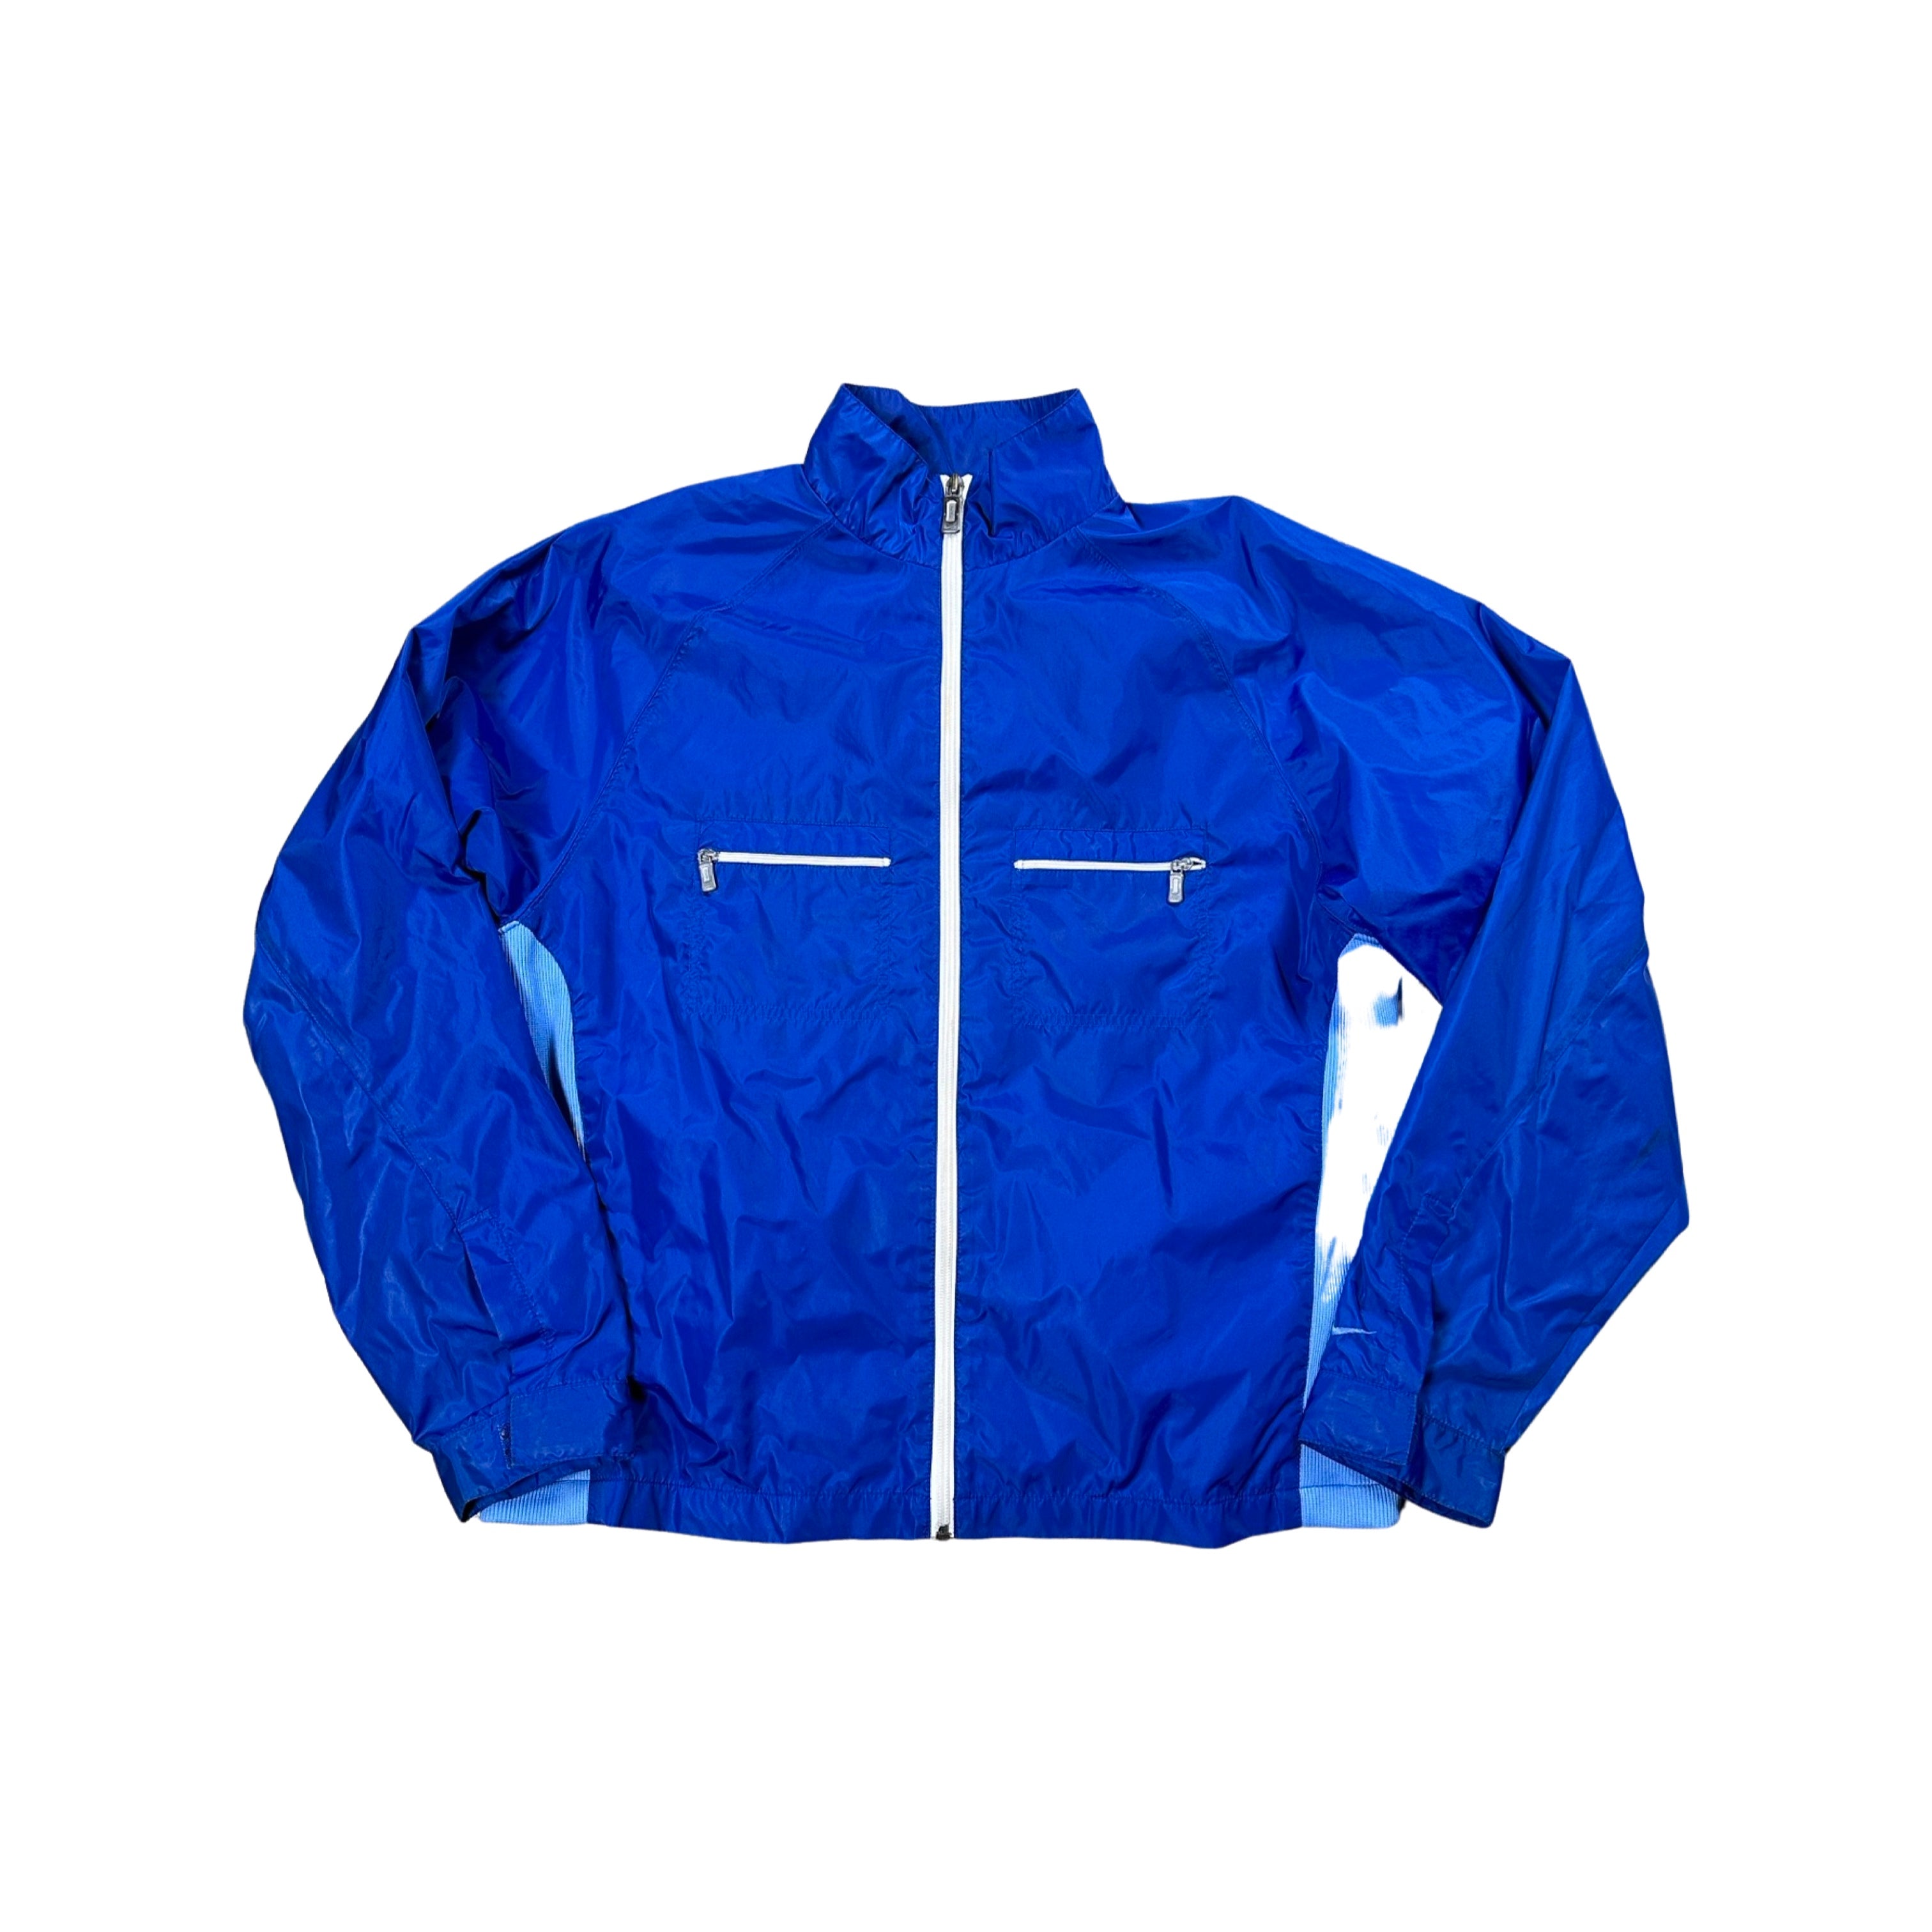 Blue Nike 90s Windbreaker Jacket (Small)